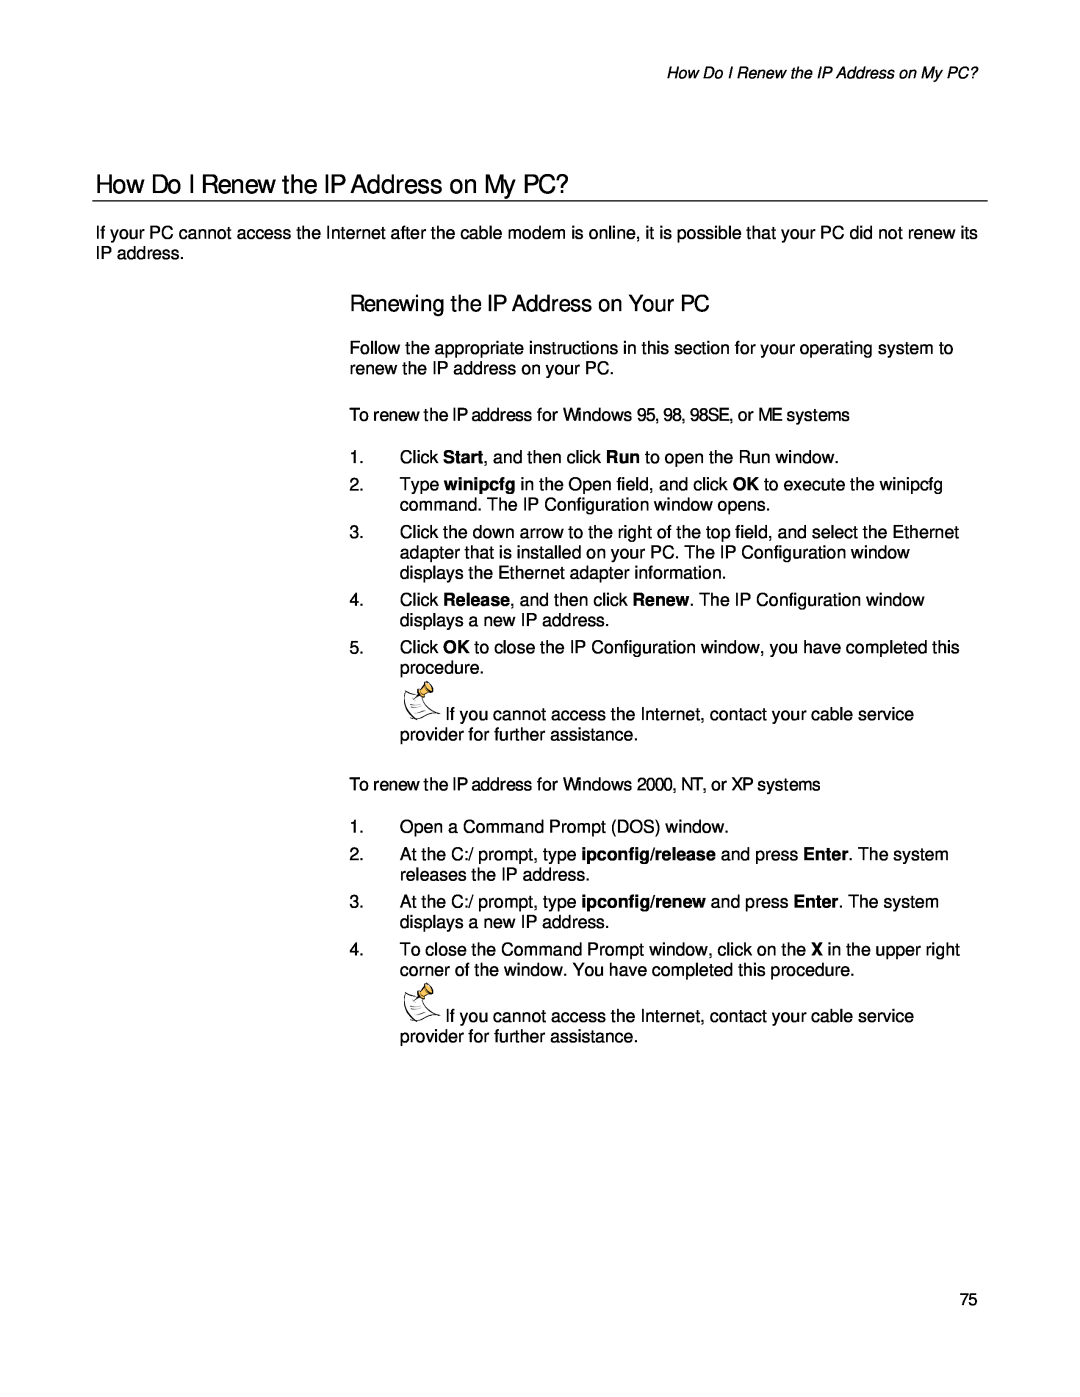 Apple EPR2320TM, DPR2320TM manual How Do I Renew the IP Address on My PC?, Renewing the IP Address on Your PC 